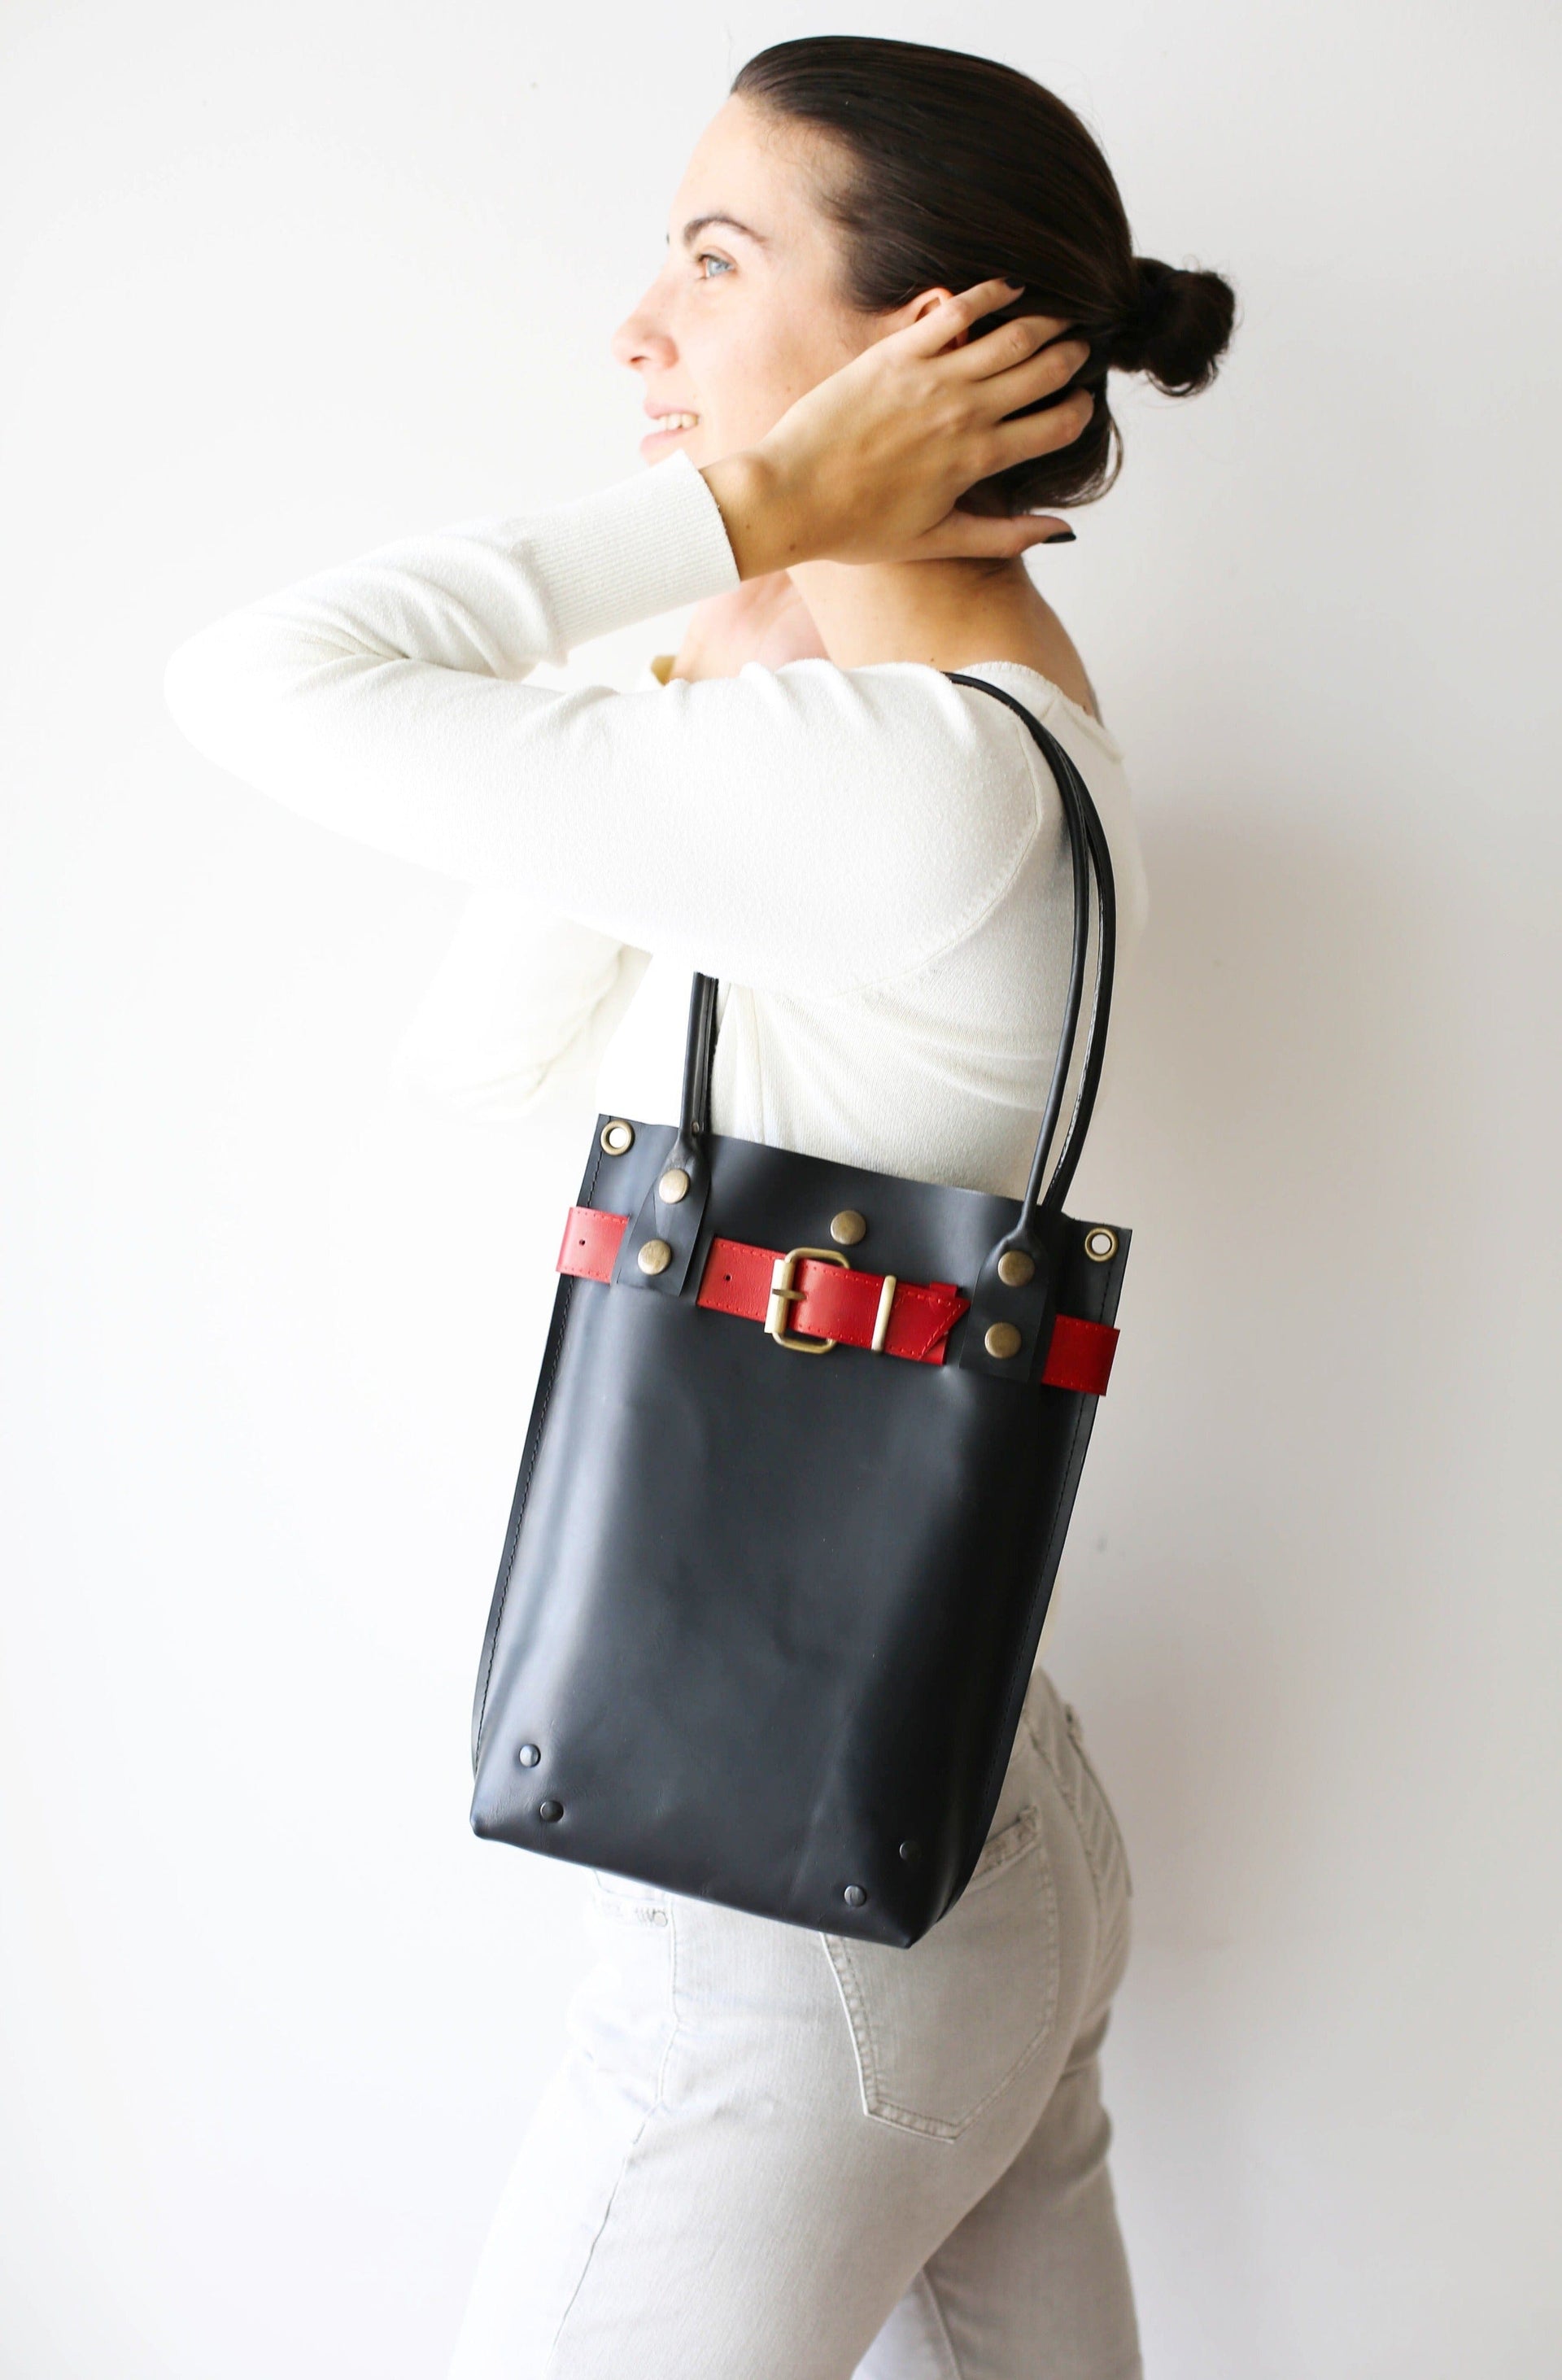 Real Cow Leather Bag Strap For Handbags 2cm Wide Shoulder Bag